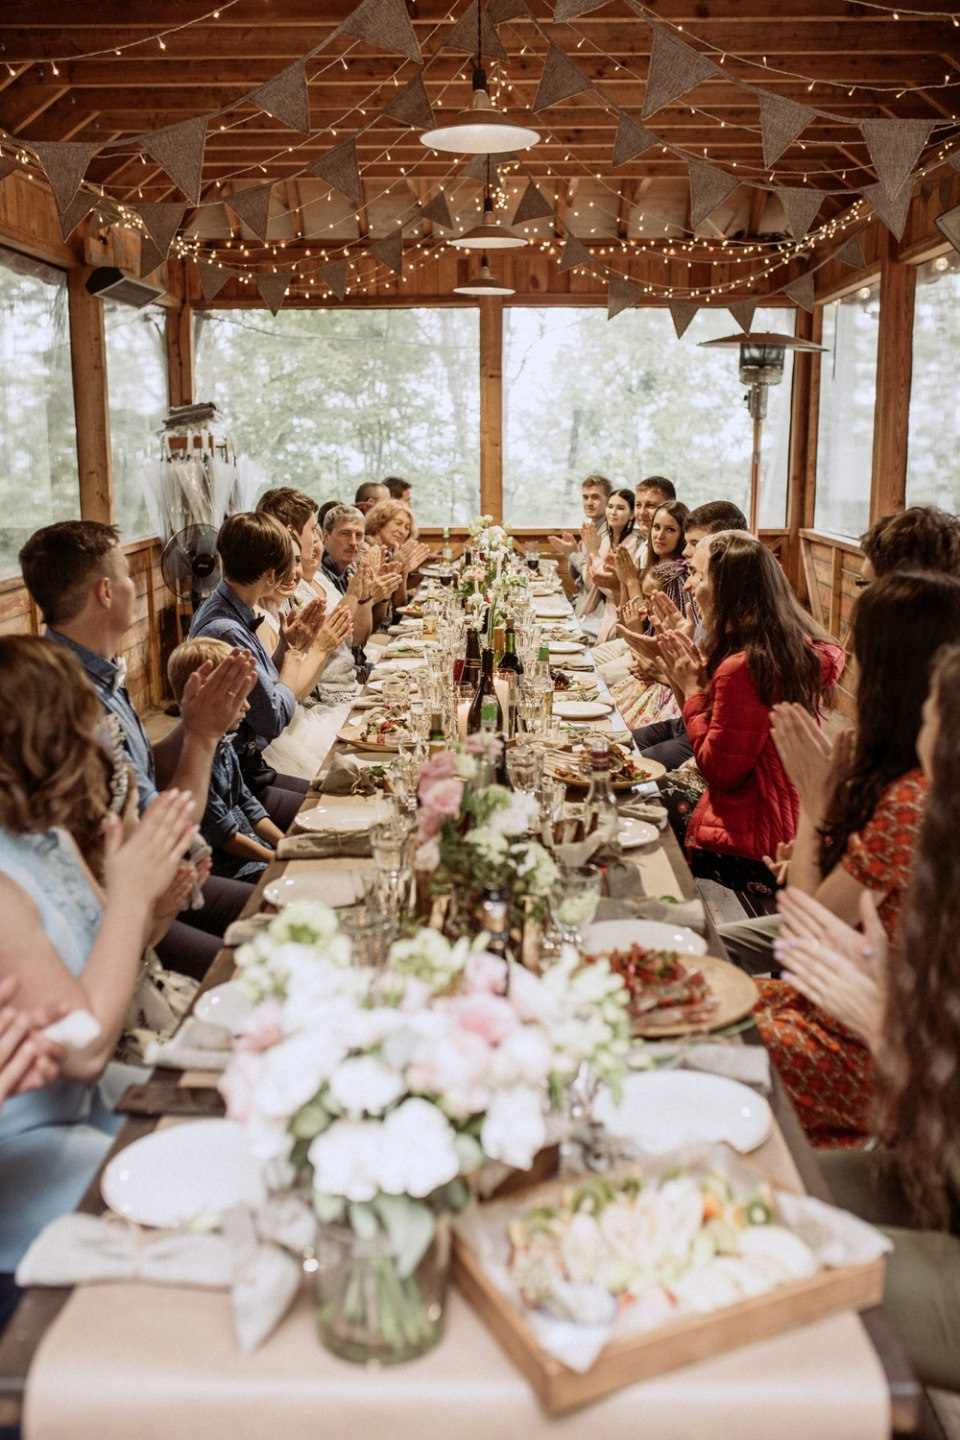 ФОТО ИЗ СТАТЬИ: Семейный ужин на даче: богемная свадьба на природе